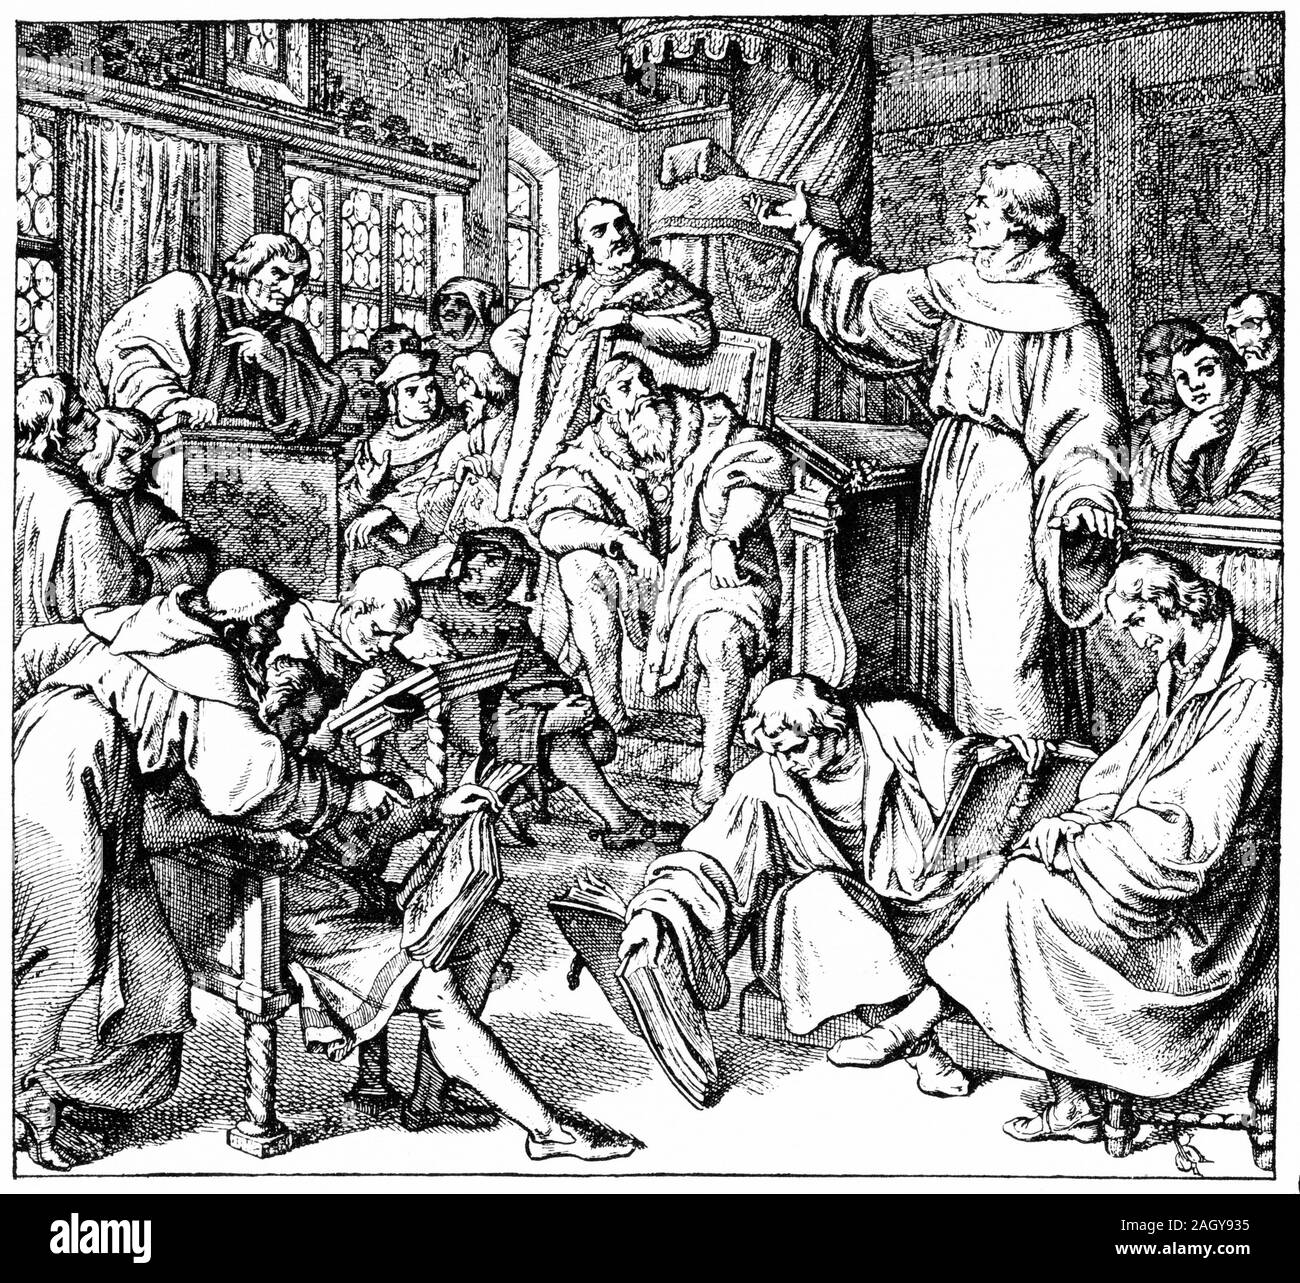 Incisione del dibattito di Lipsia (tedesco: Leipziger disputa) una disputa teologica originariamente tra Andreas Karlstadt, Martin Luther e Johann Eck nel giugno e luglio 1519 al castello di Pleissenburg a Leipzig, Germania. Foto Stock